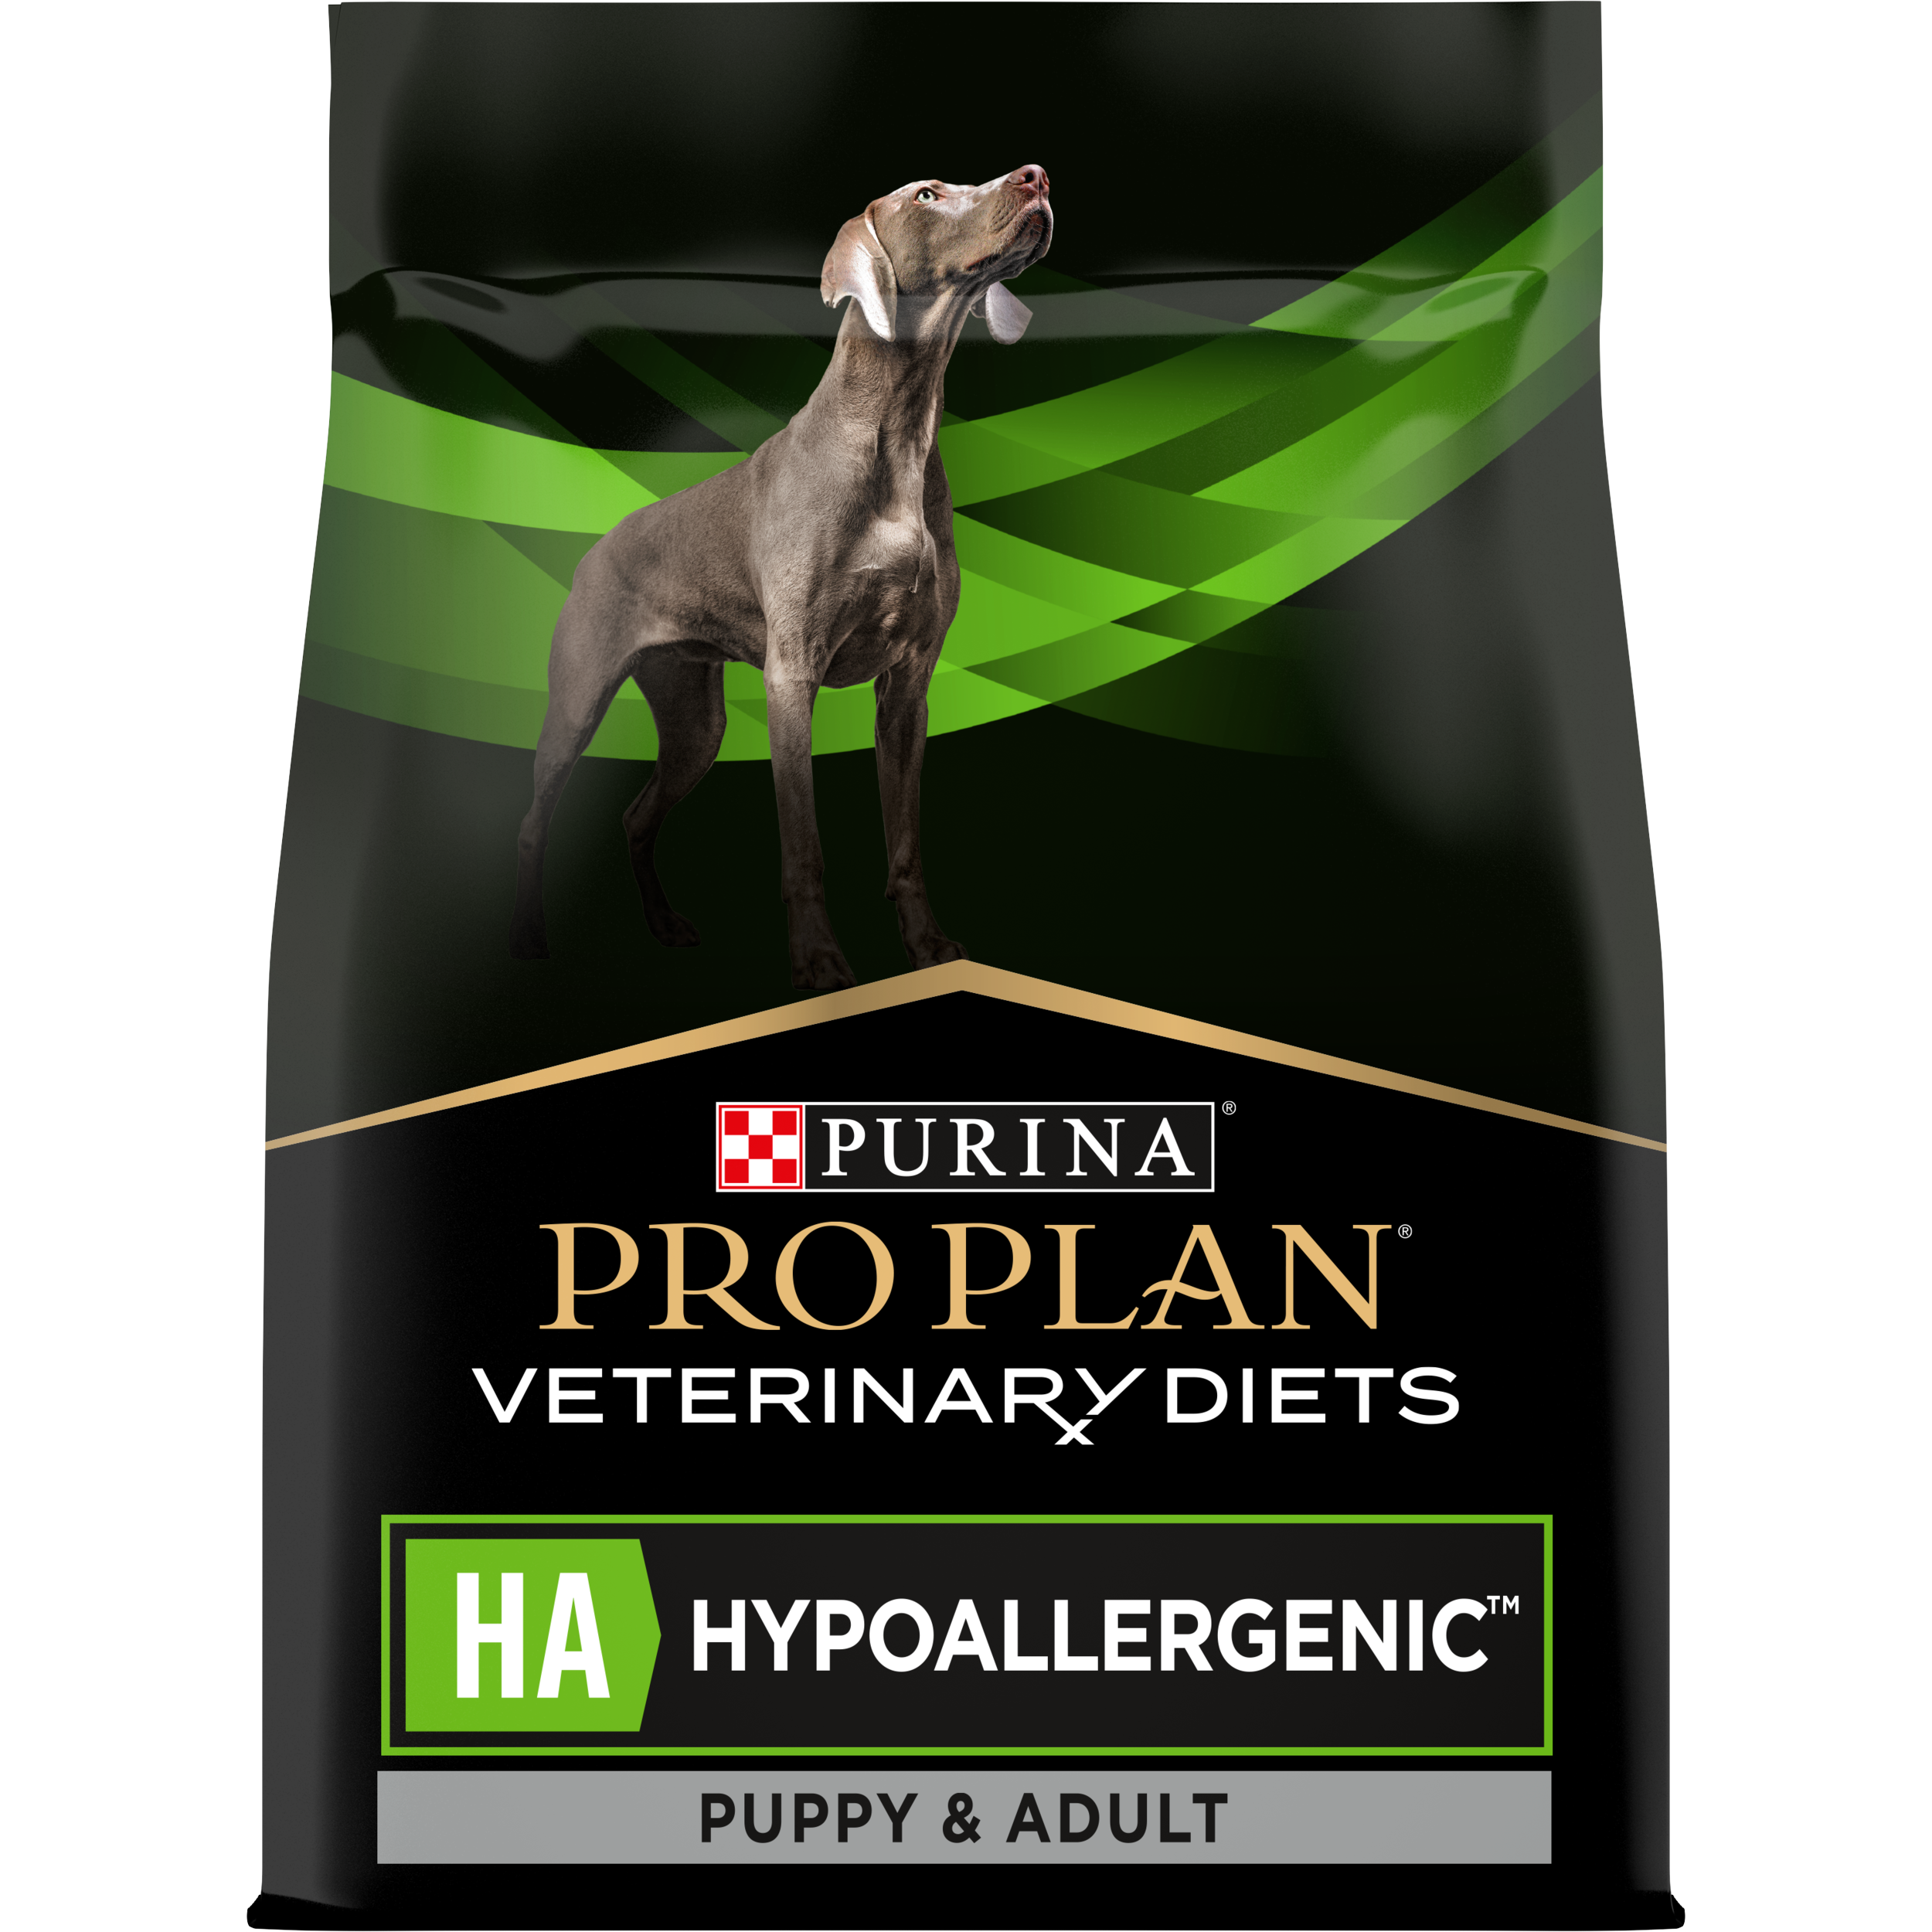 Floreren Anders restjes PPVD® HA Hypoallergenic hondenvoer | Purina